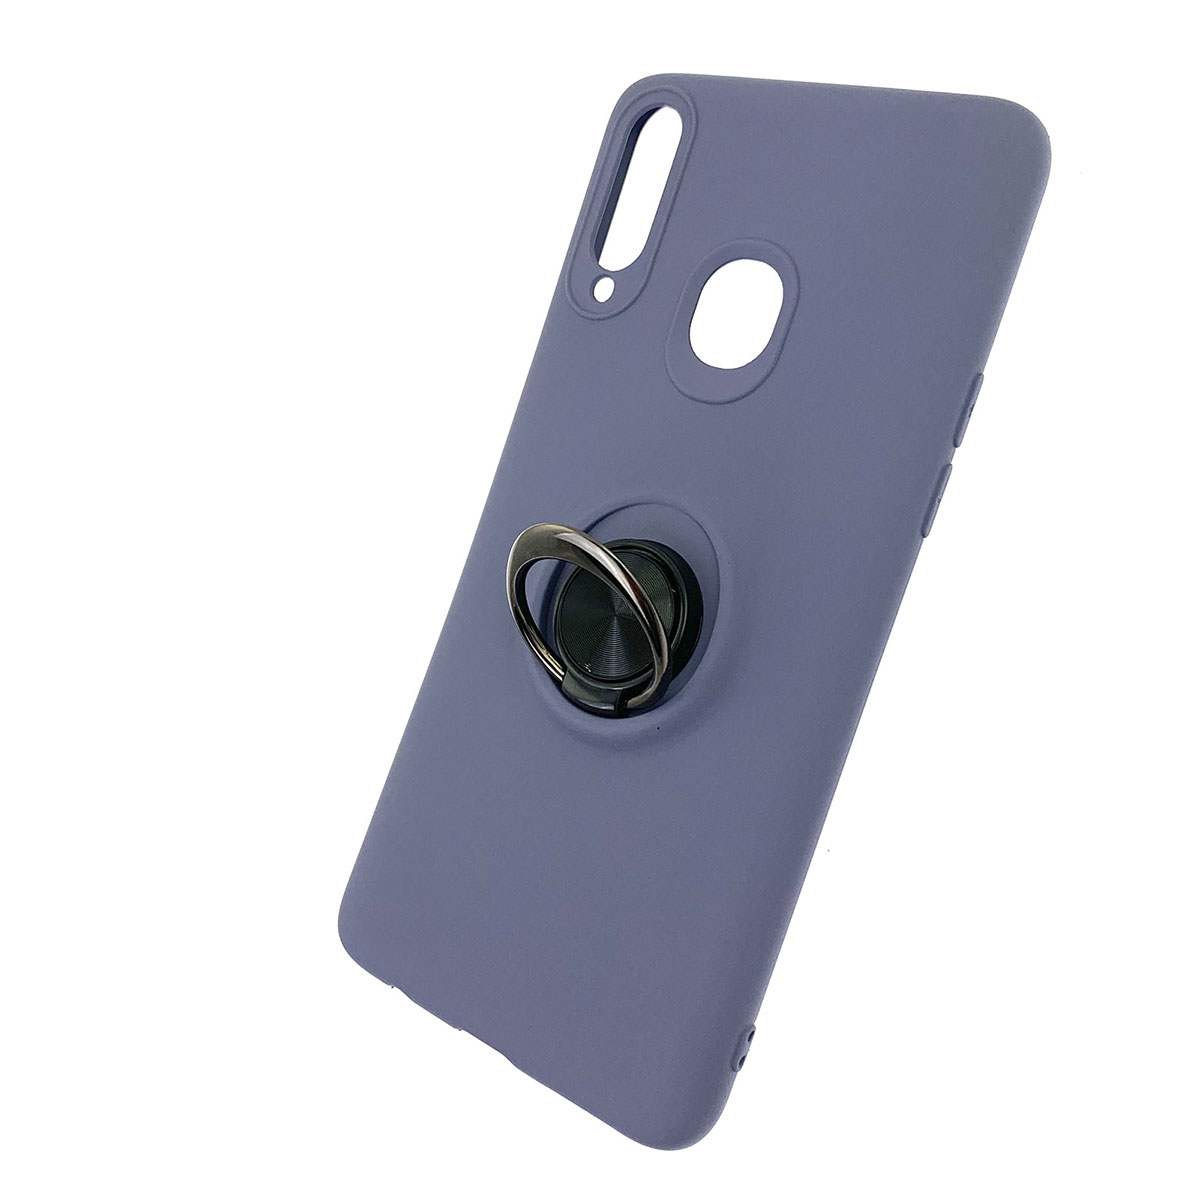 Чехол накладка для SAMSUNG Galaxy A20s (SM-A207), силикон, кольцо держатель, спиннер, цвет темно фиолетовый.